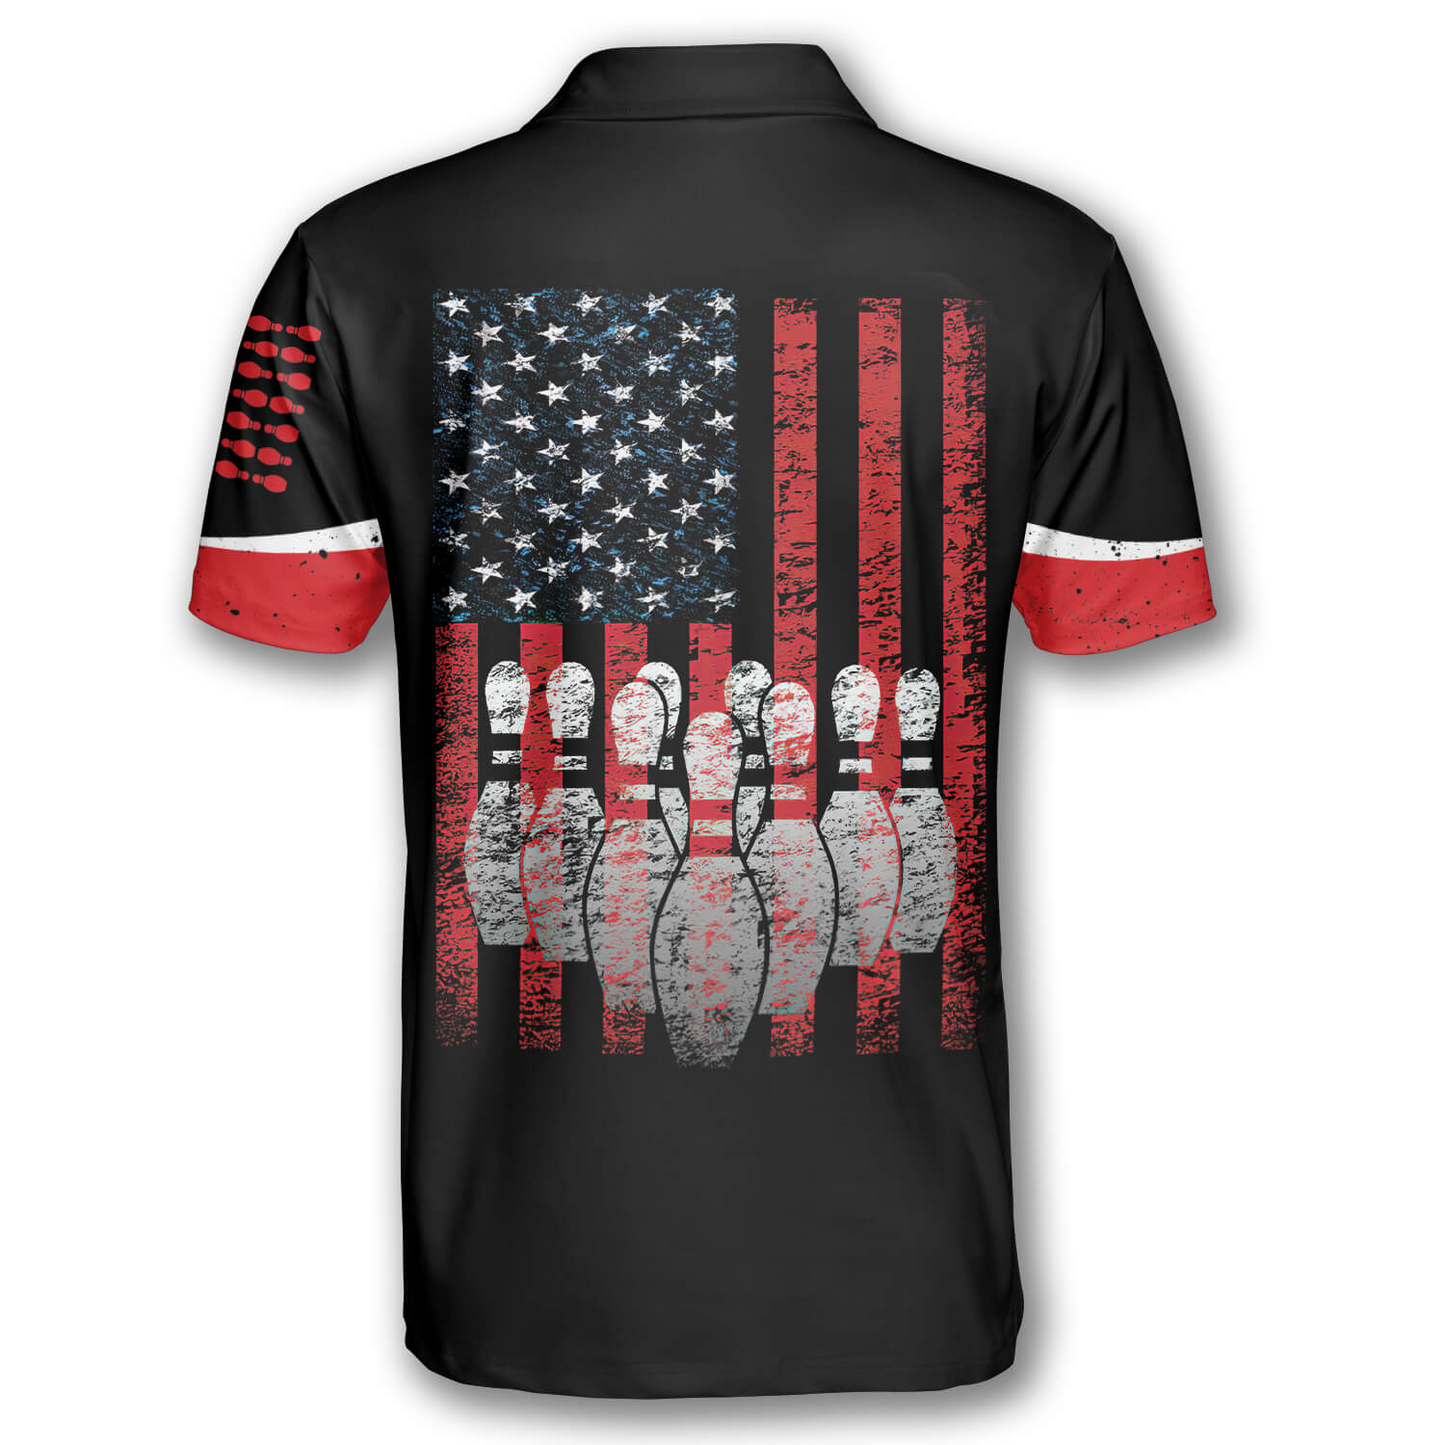 Custom American Flag Bowling Polo Shirts BO0033